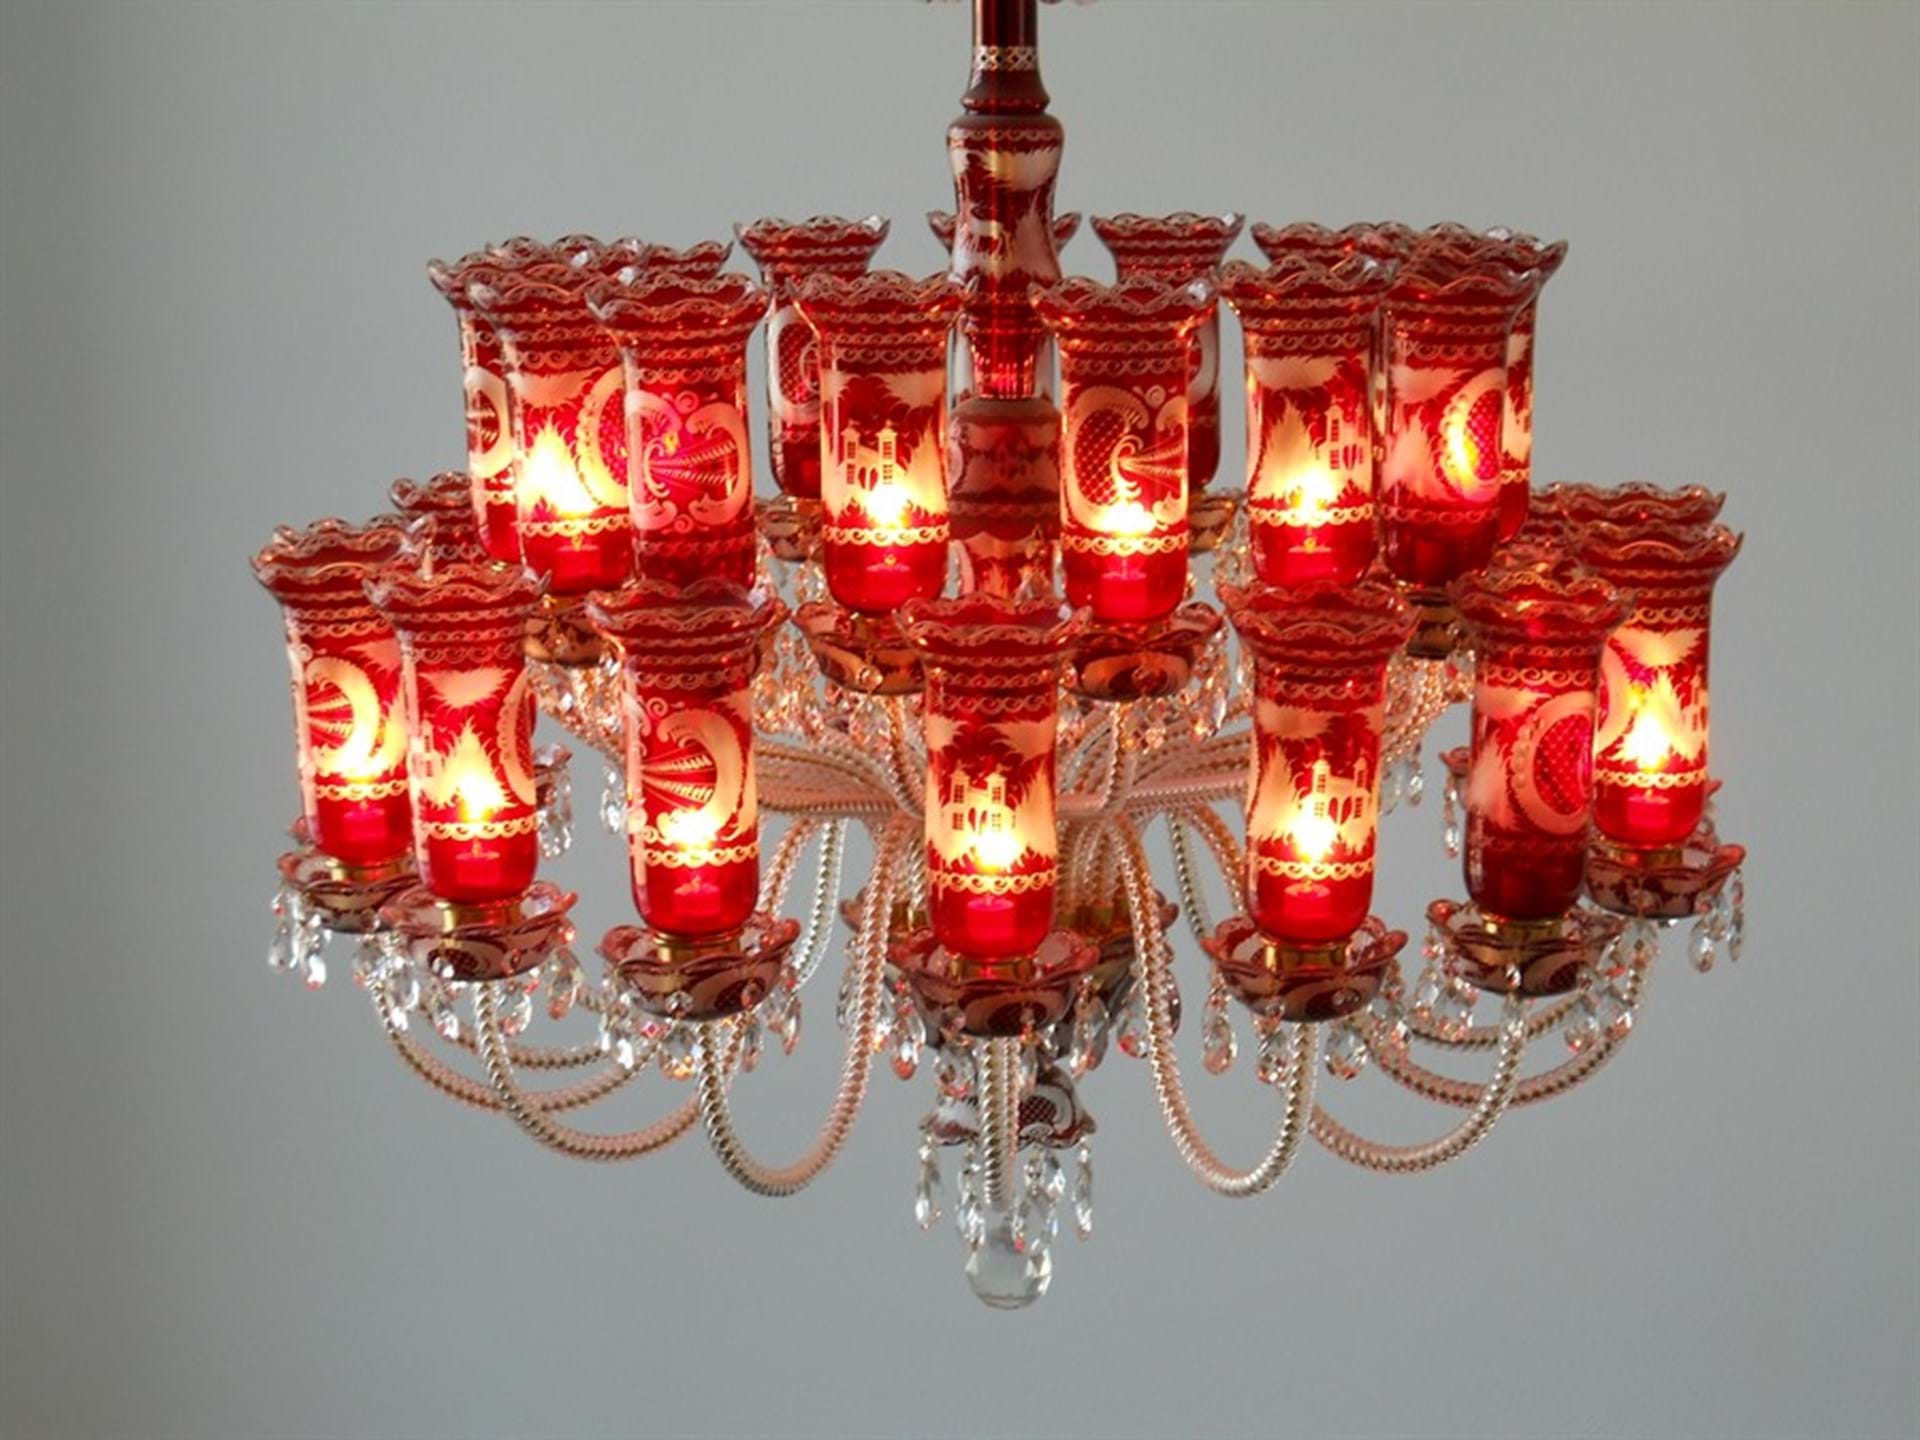 Czech made chandelier in museum